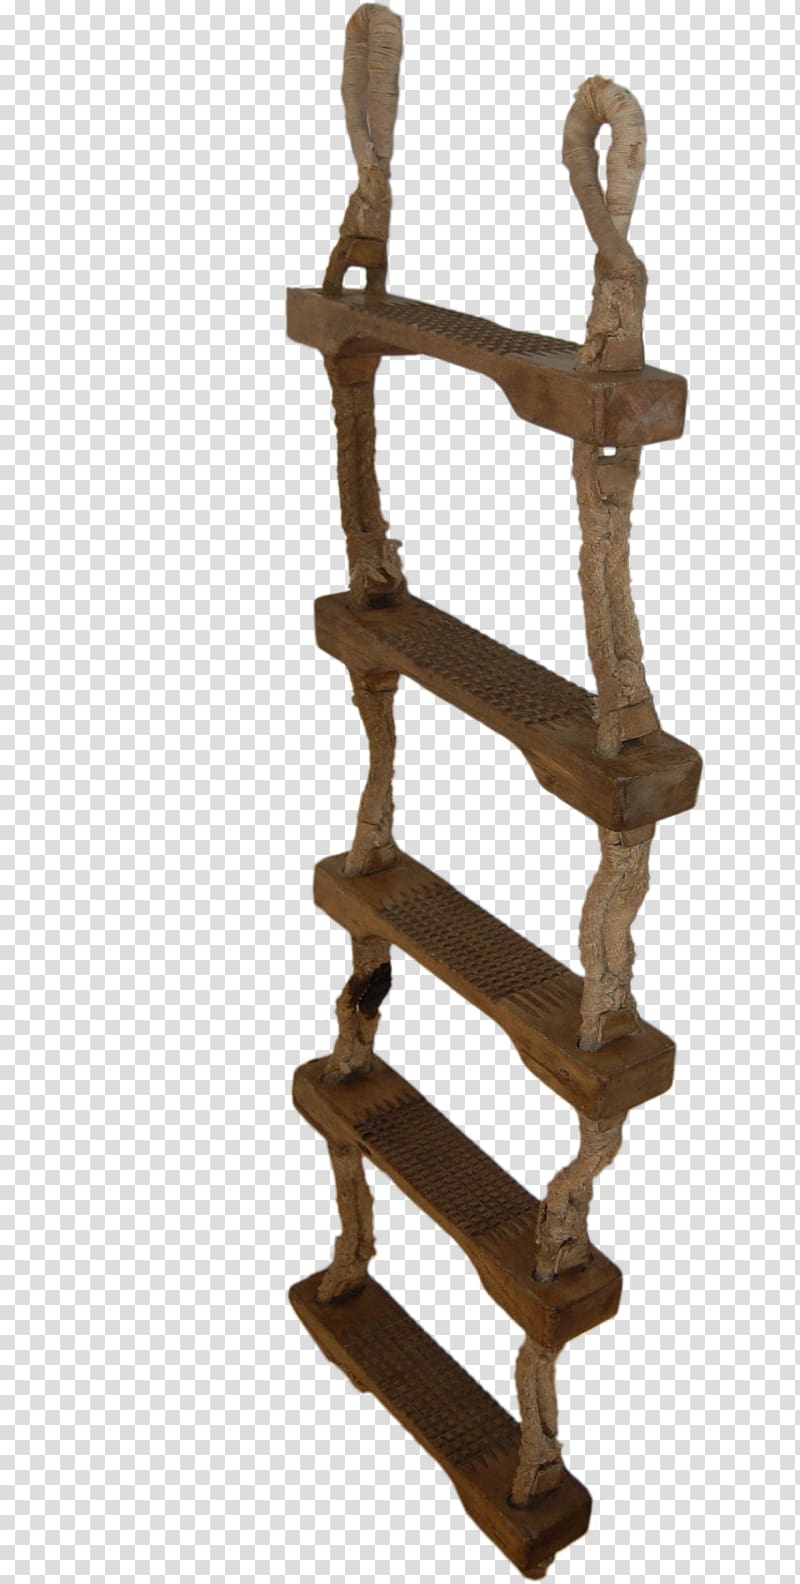 Ladder Wood Furniture Ship, ladder transparent background PNG clipart